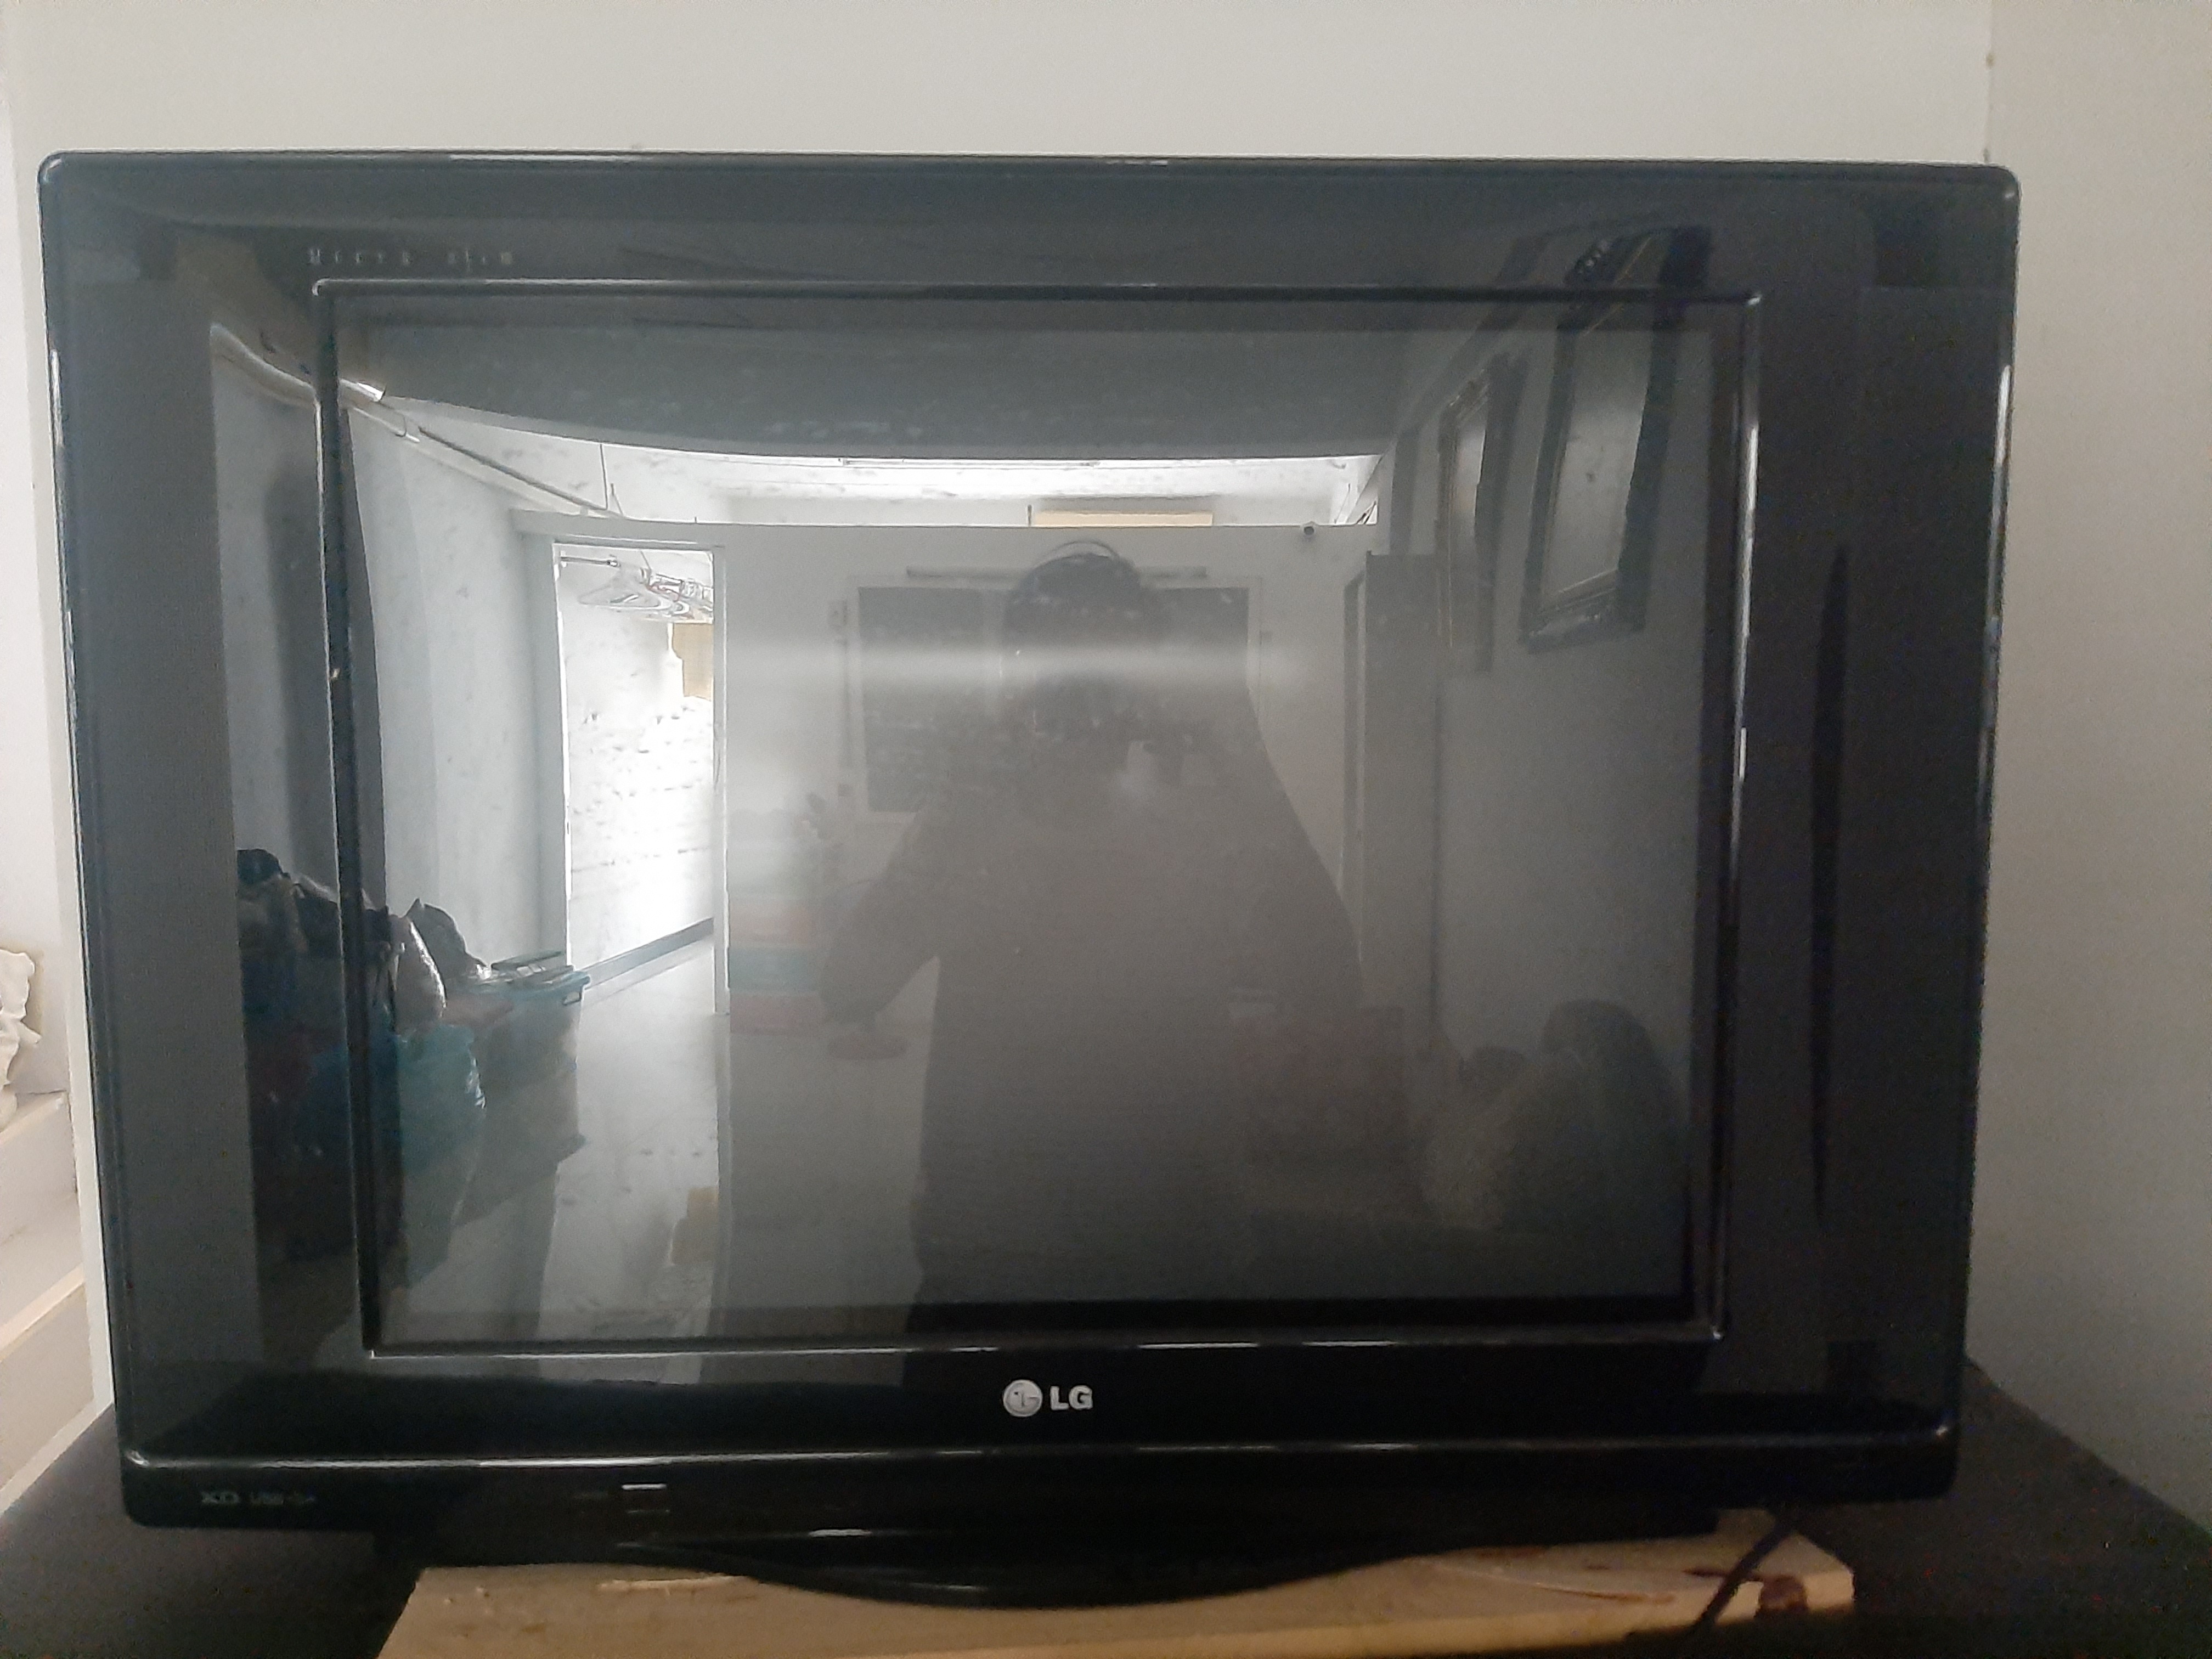  ขายทีวี LG Super Slim XD ขนาด 29 นิ้ว  รูปที่ 1